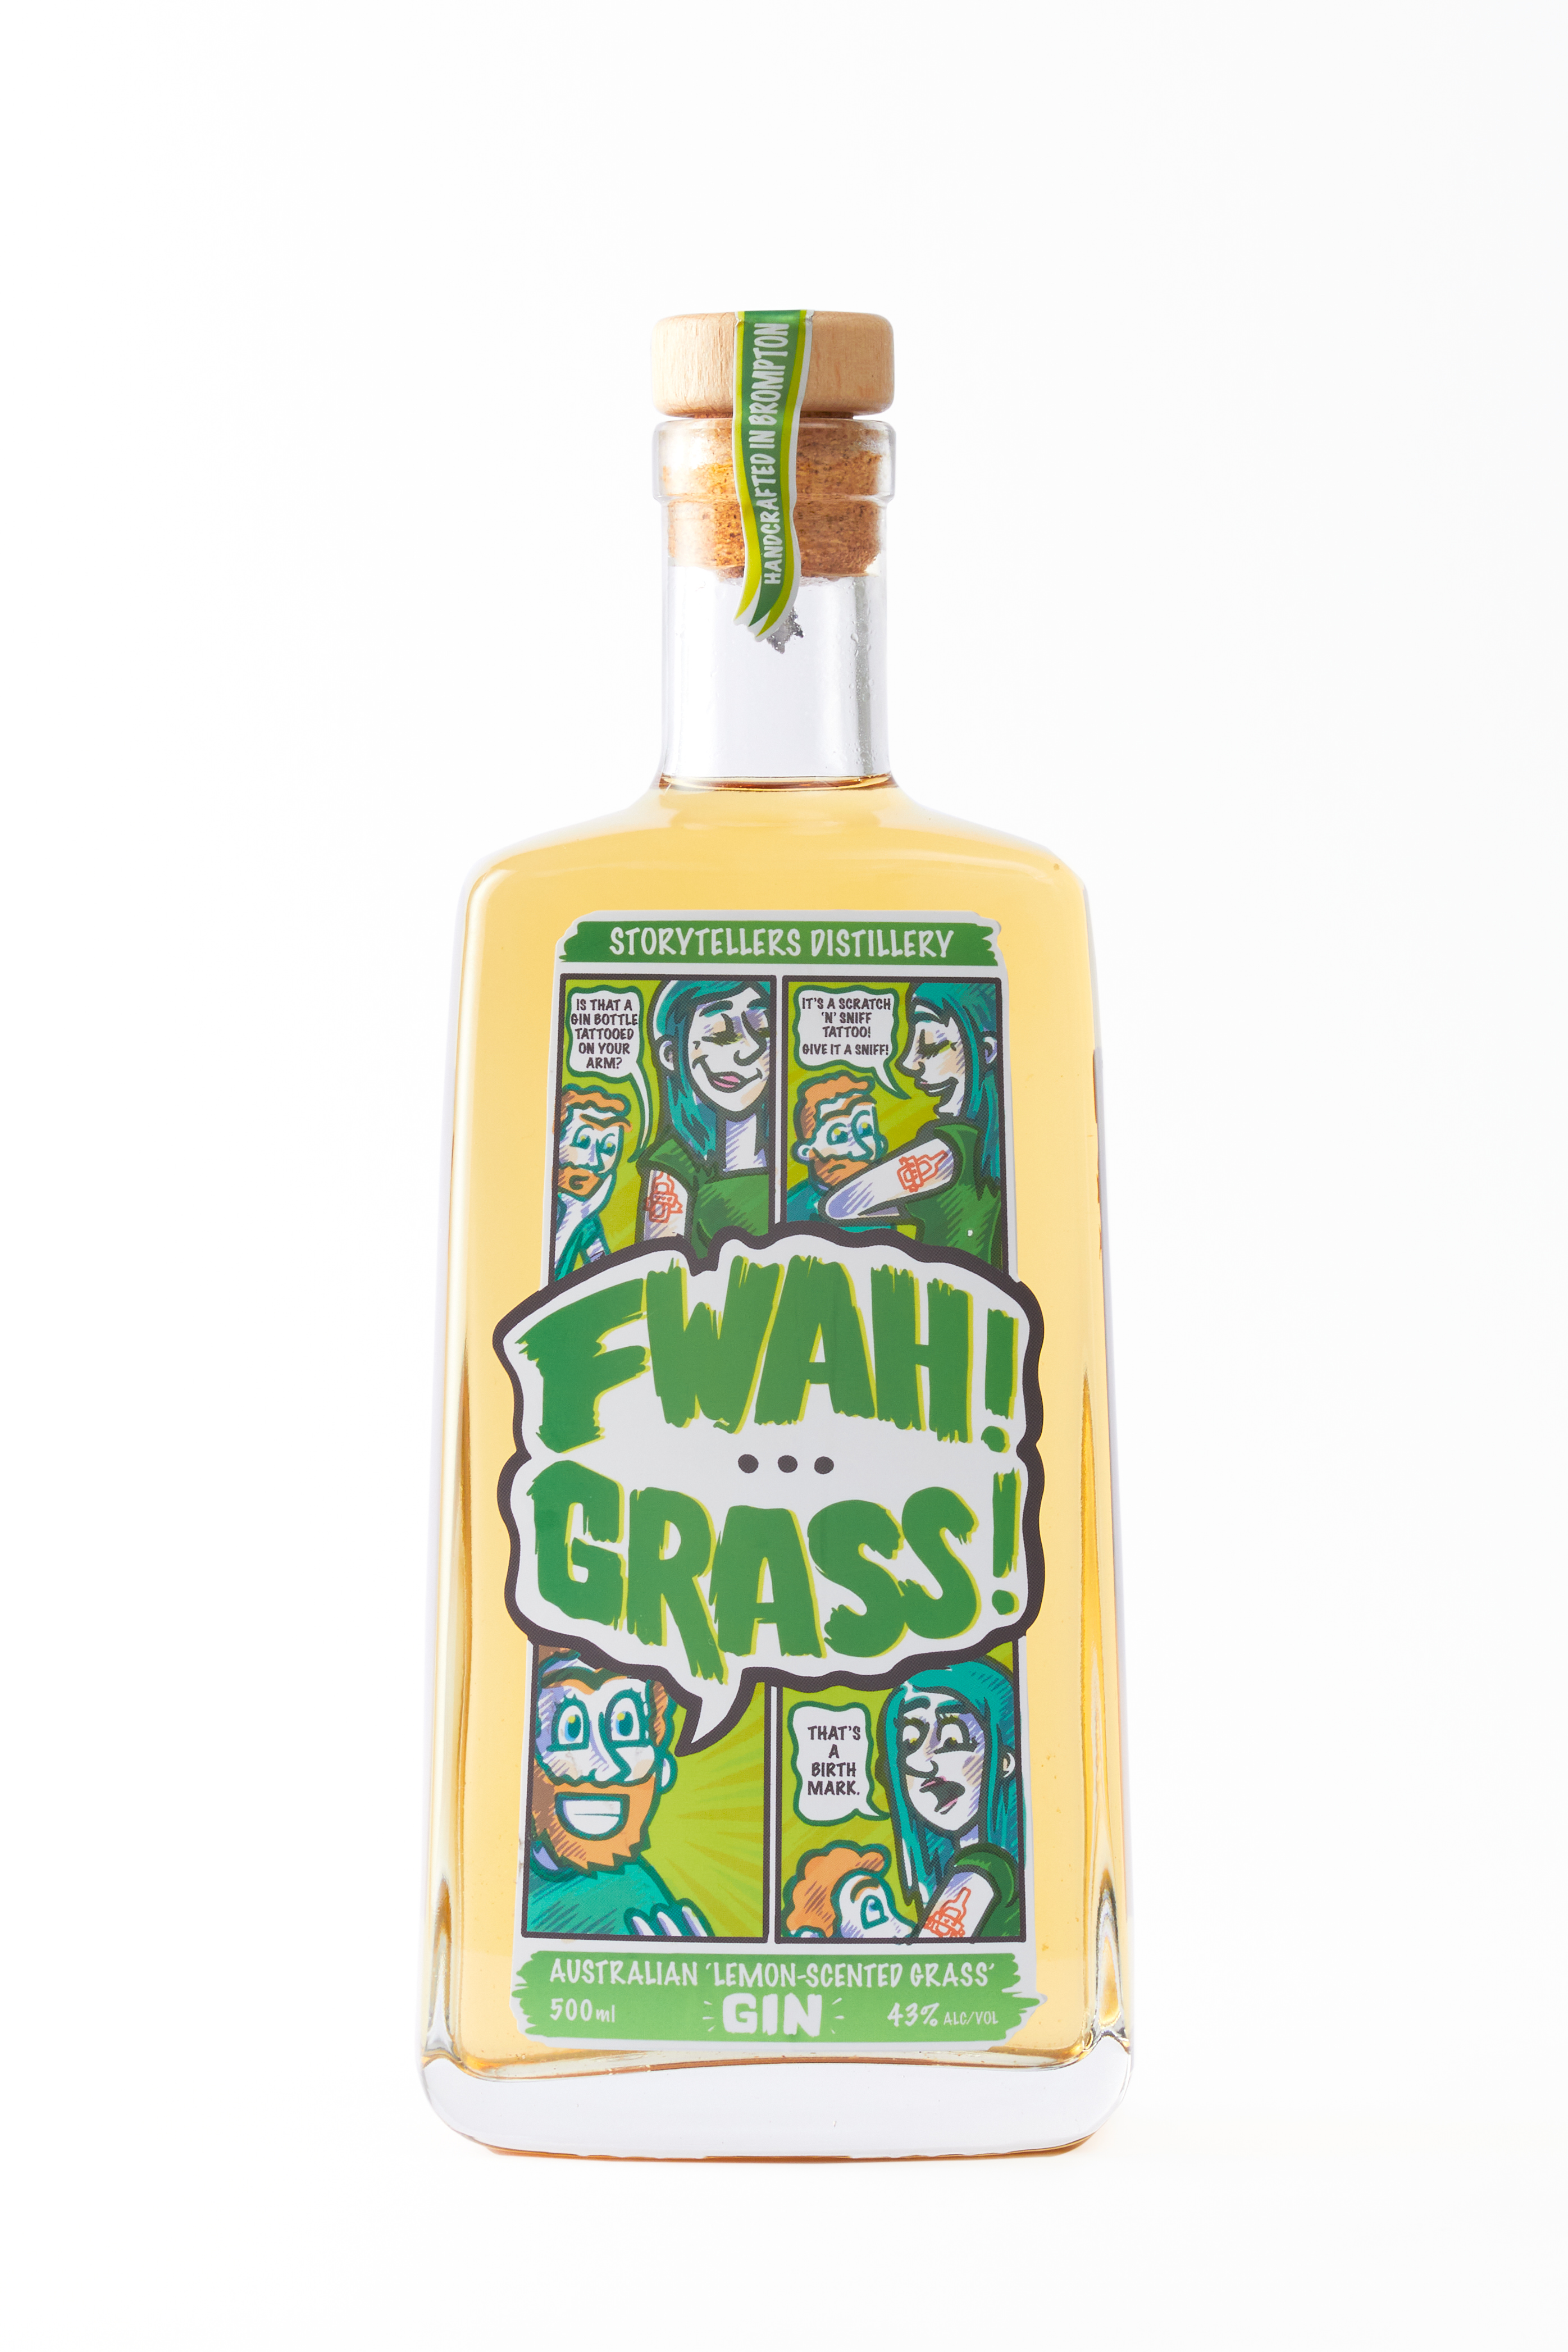 FWAH! GRASS! Lemon-Scented Grass Gin